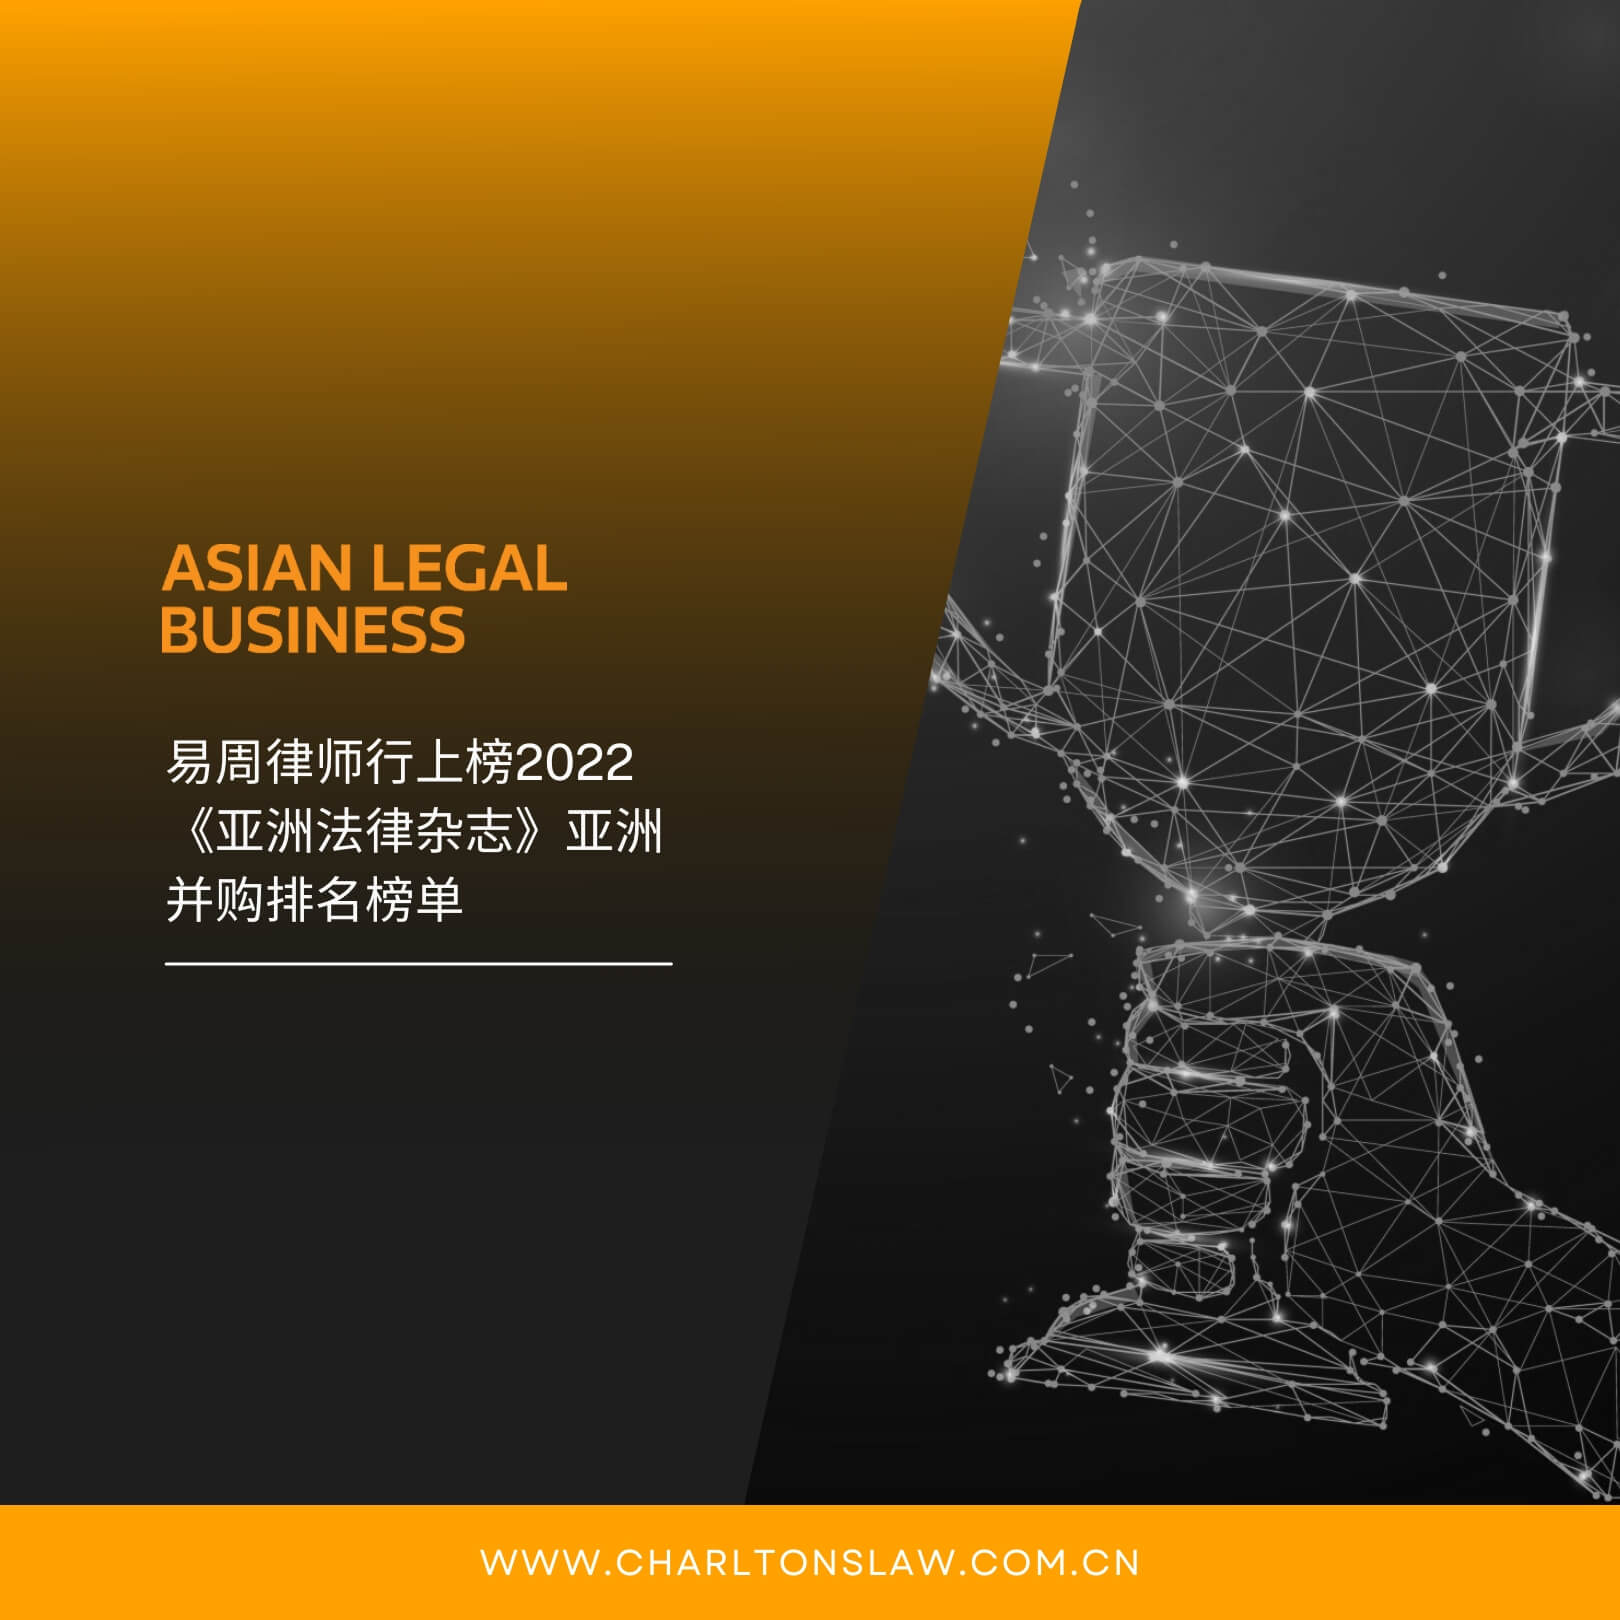 易周律师行上榜2022《亚洲法律杂志》亚洲并购排名榜单